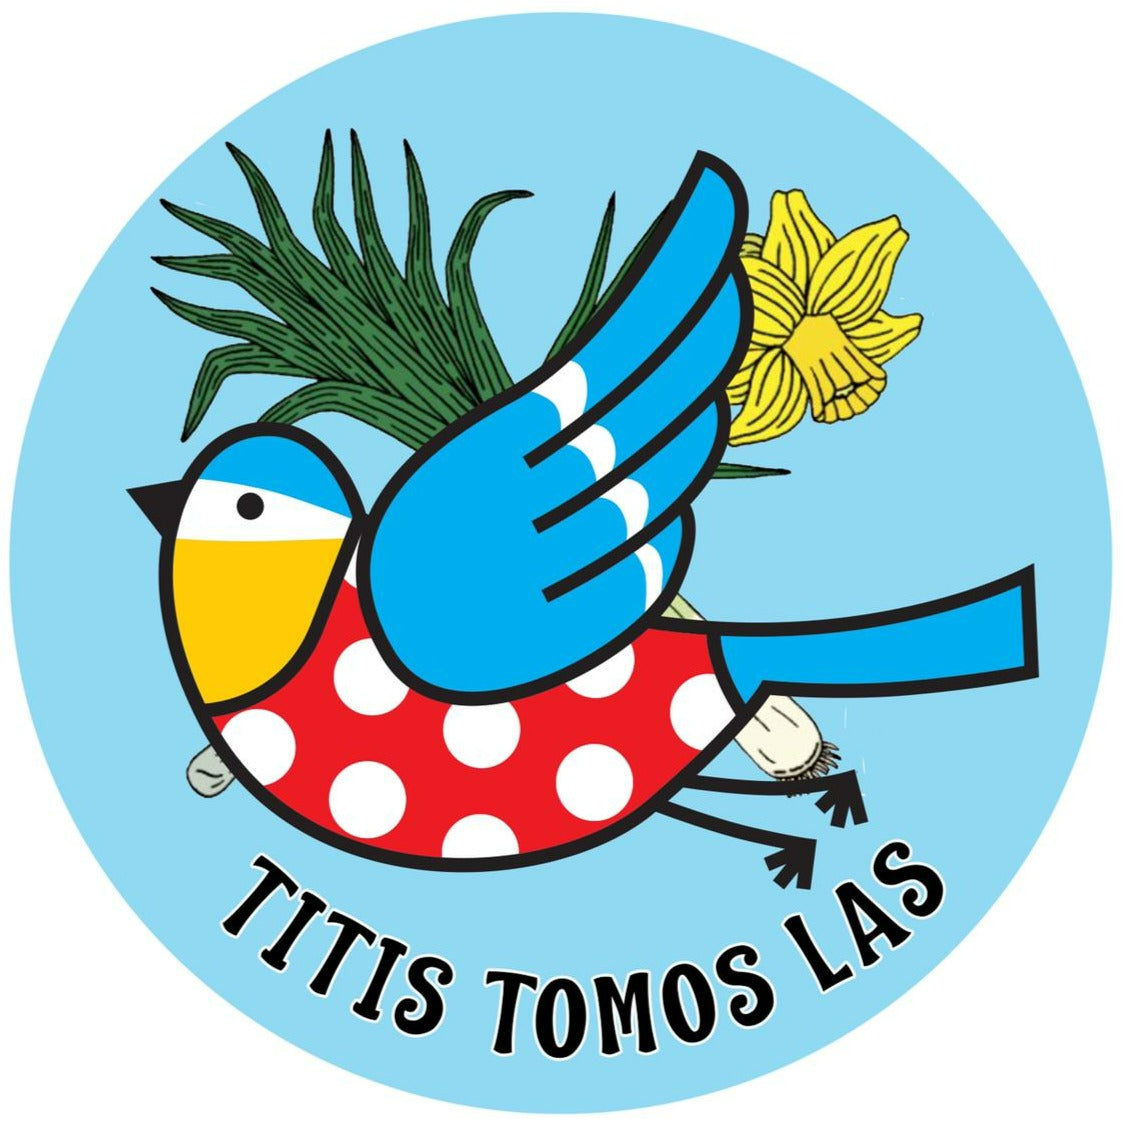 Titis Tomos Las Badge